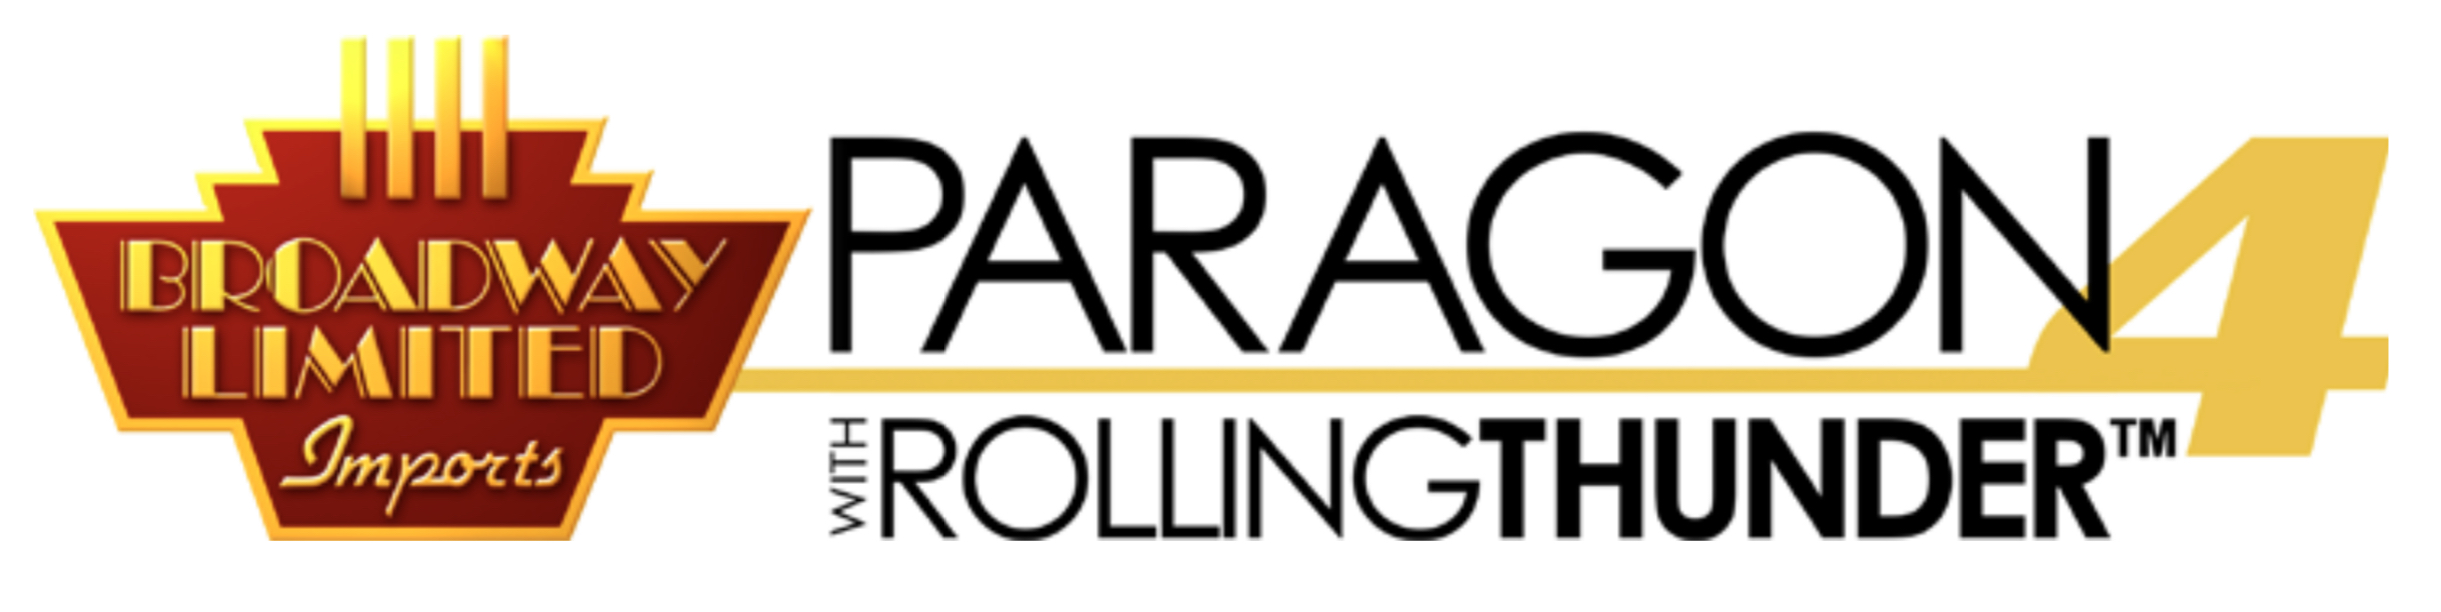 Broadway Paragon 4 Logo